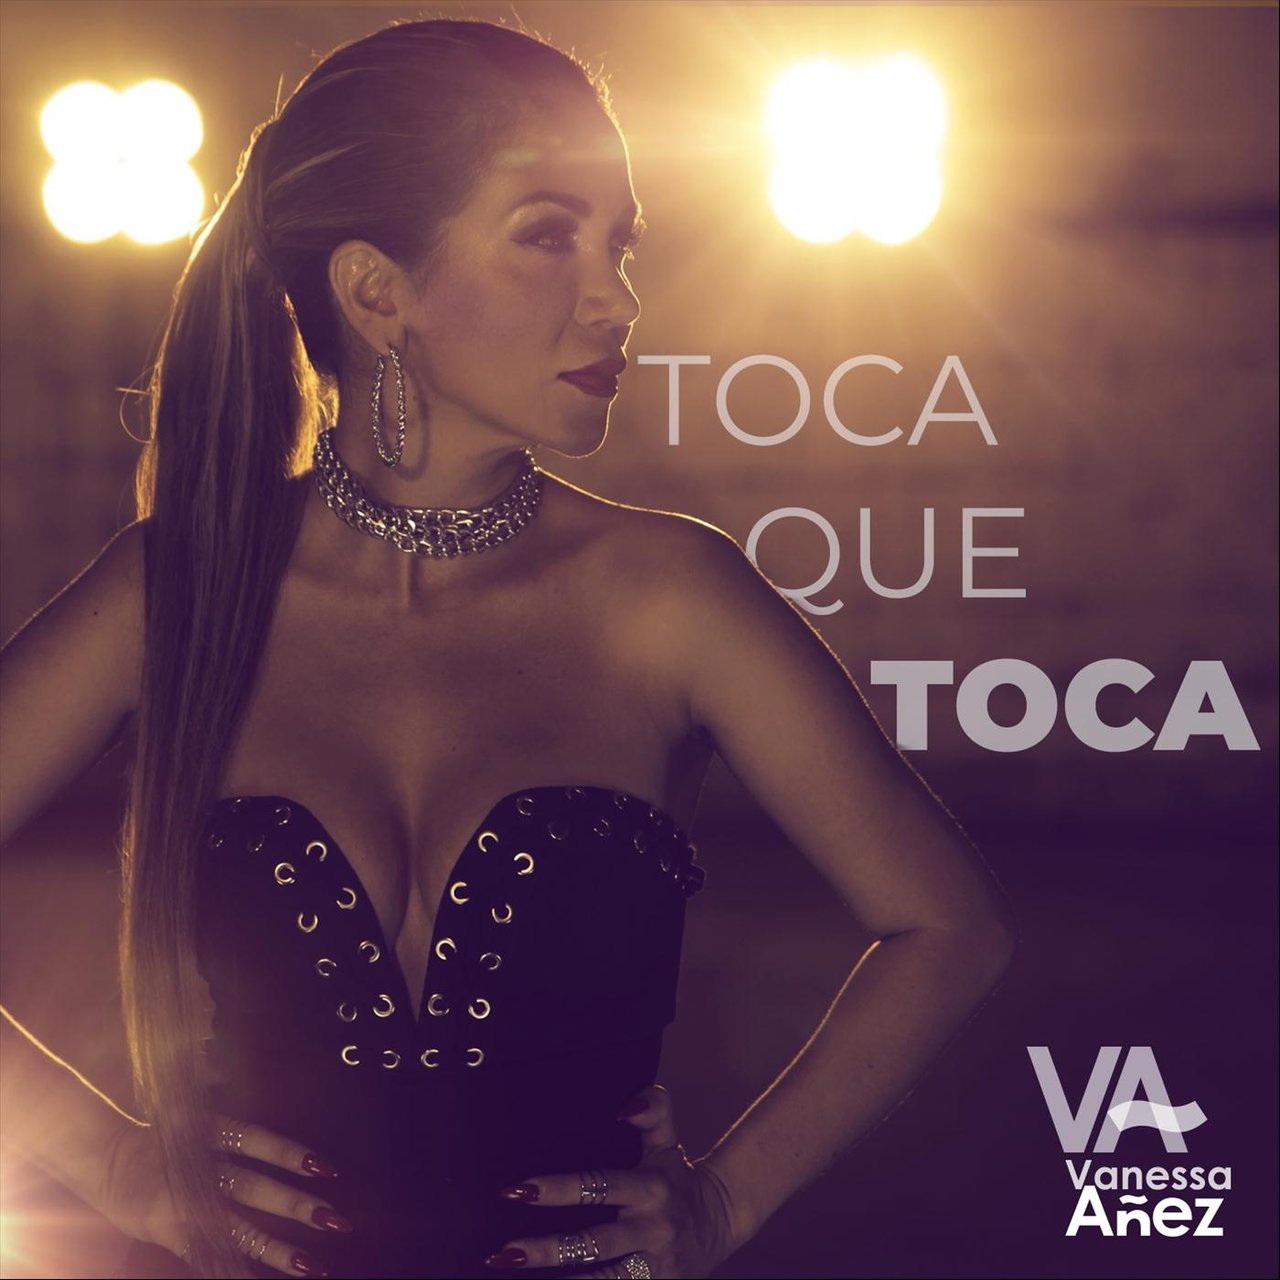 Vanessa Añez — Toca Que Toca cover artwork